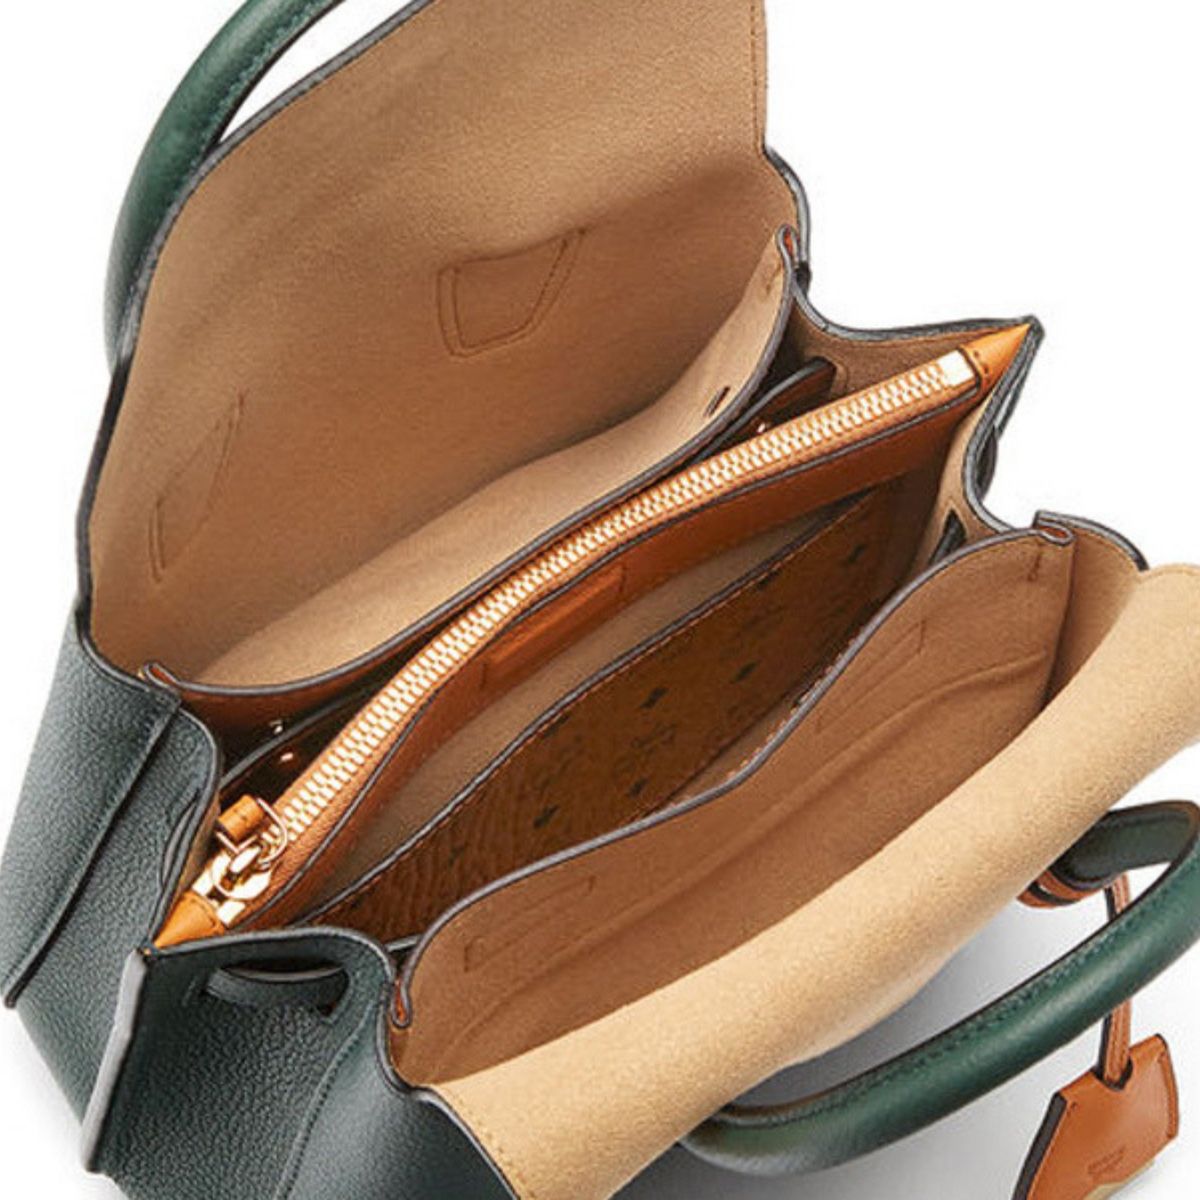 Milla Mini Leather Forest Green Tote Bag - Seven Season